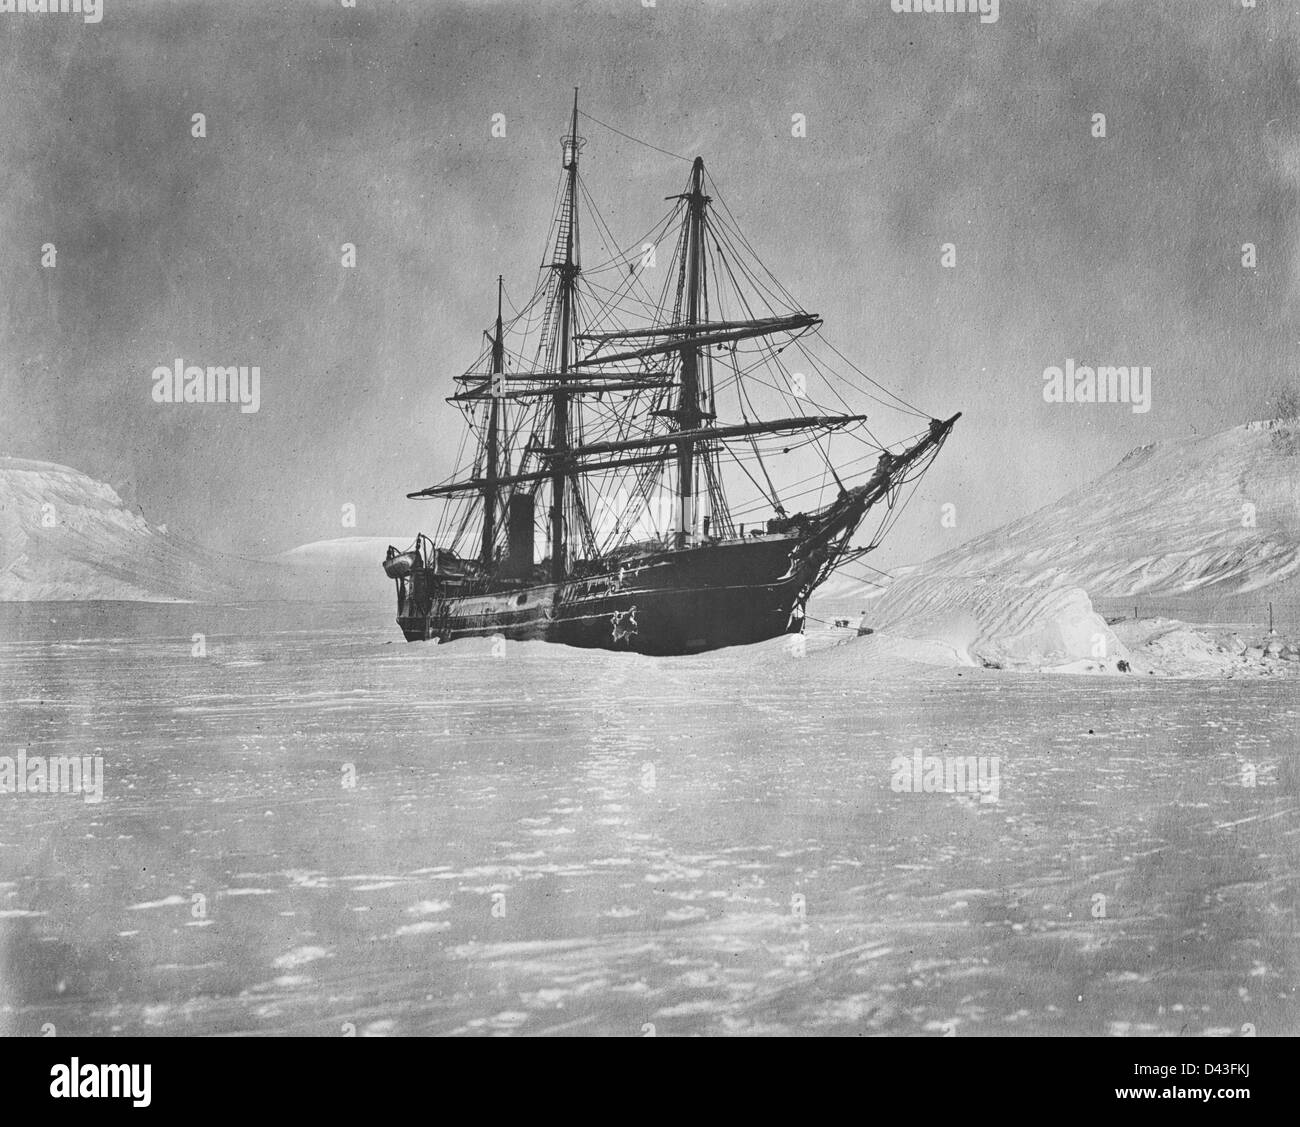 Un clair de lune photo de la 'America' prises la nuit de Noël, 1901 Expédition polaire, Baldwin-Ziegler Banque D'Images